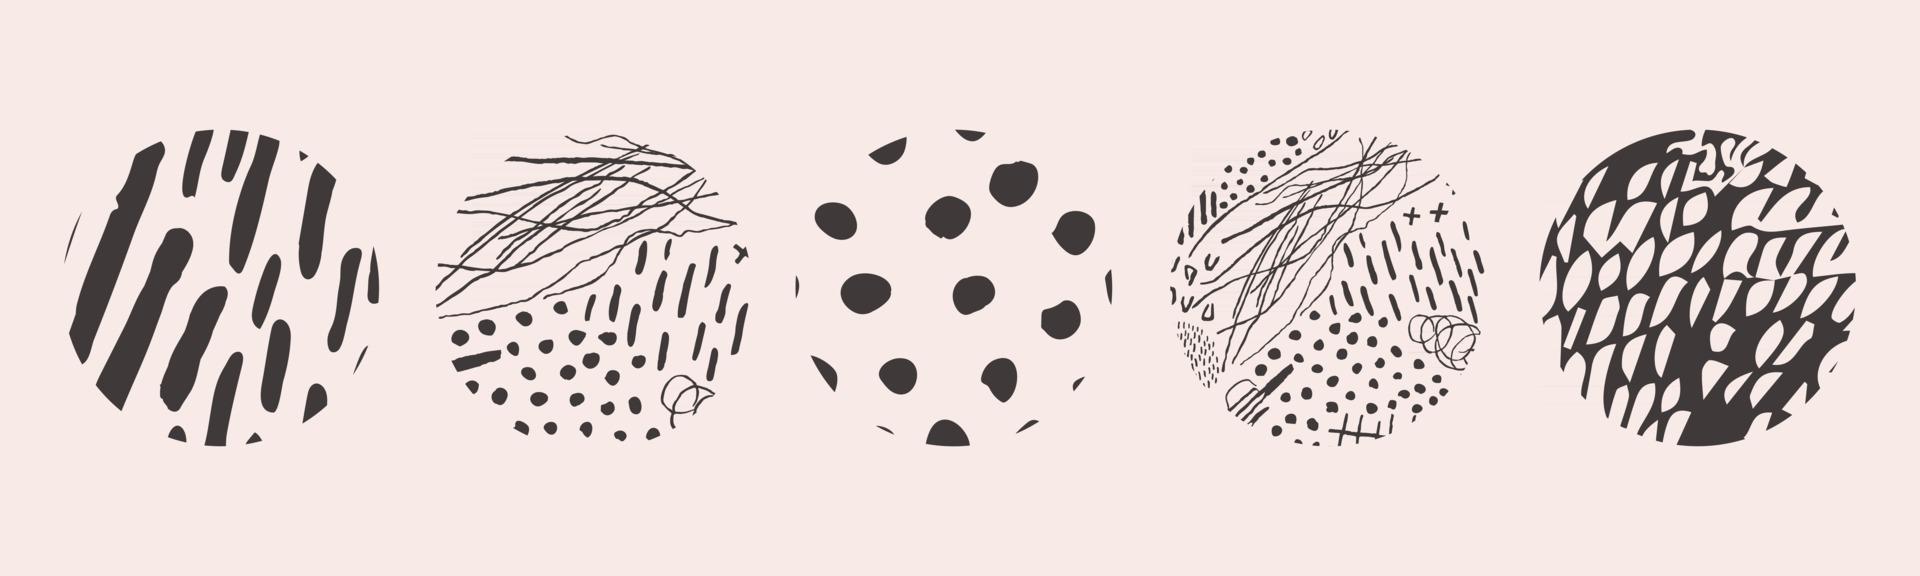 vector hand getrokken set met ronde geïsoleerde abstracte zwarte patronen of achtergronden. verschillende doodle-vormen voor highlight-covers, posters, sjablonen voor sociale media-pictogrammen.